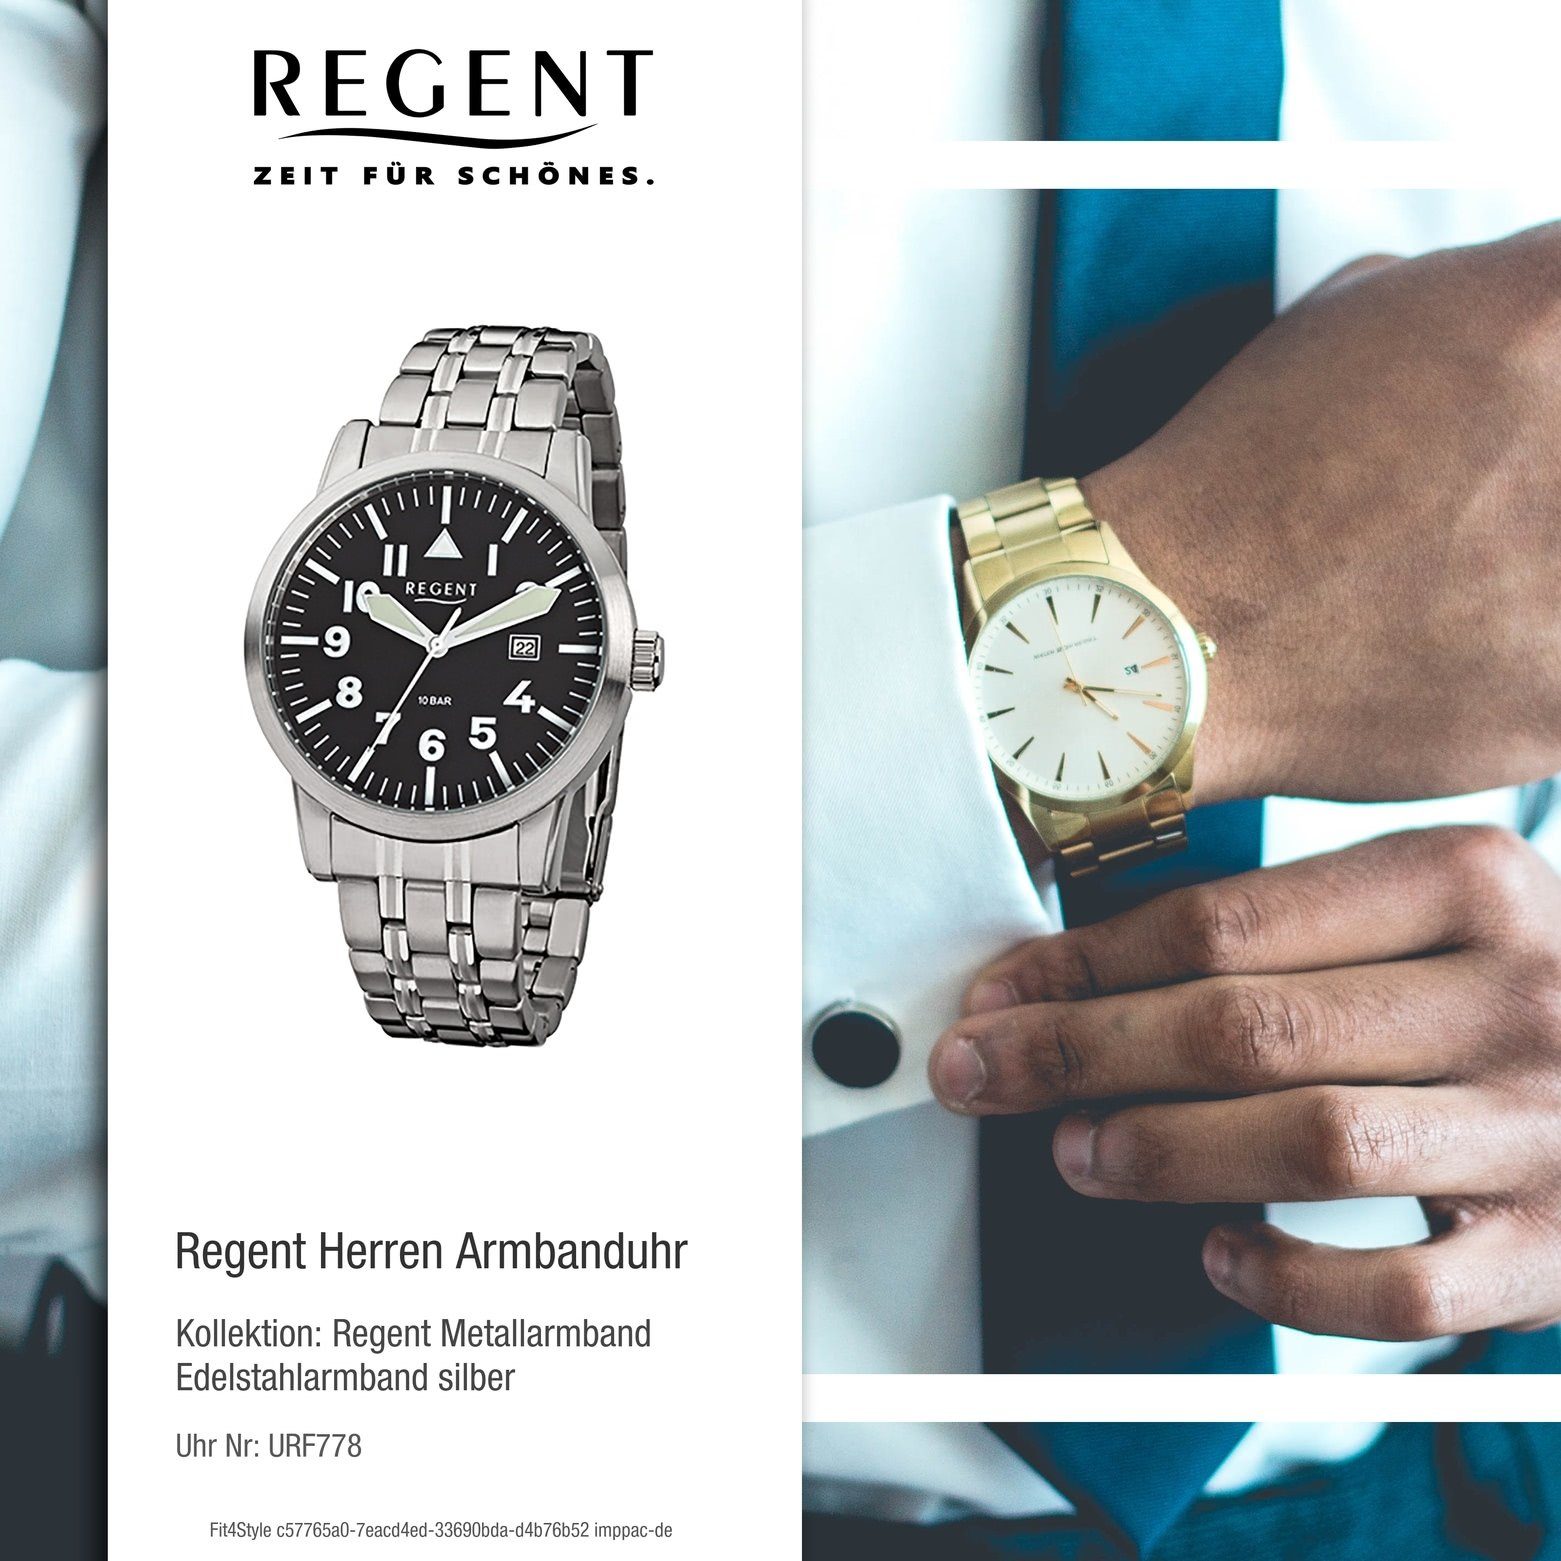 Regent rund, Armbanduhr Edelstahlarmband Herren-Armbanduhr Regent Analog, Herren (ca. silber groß Quarzuhr 42mm),